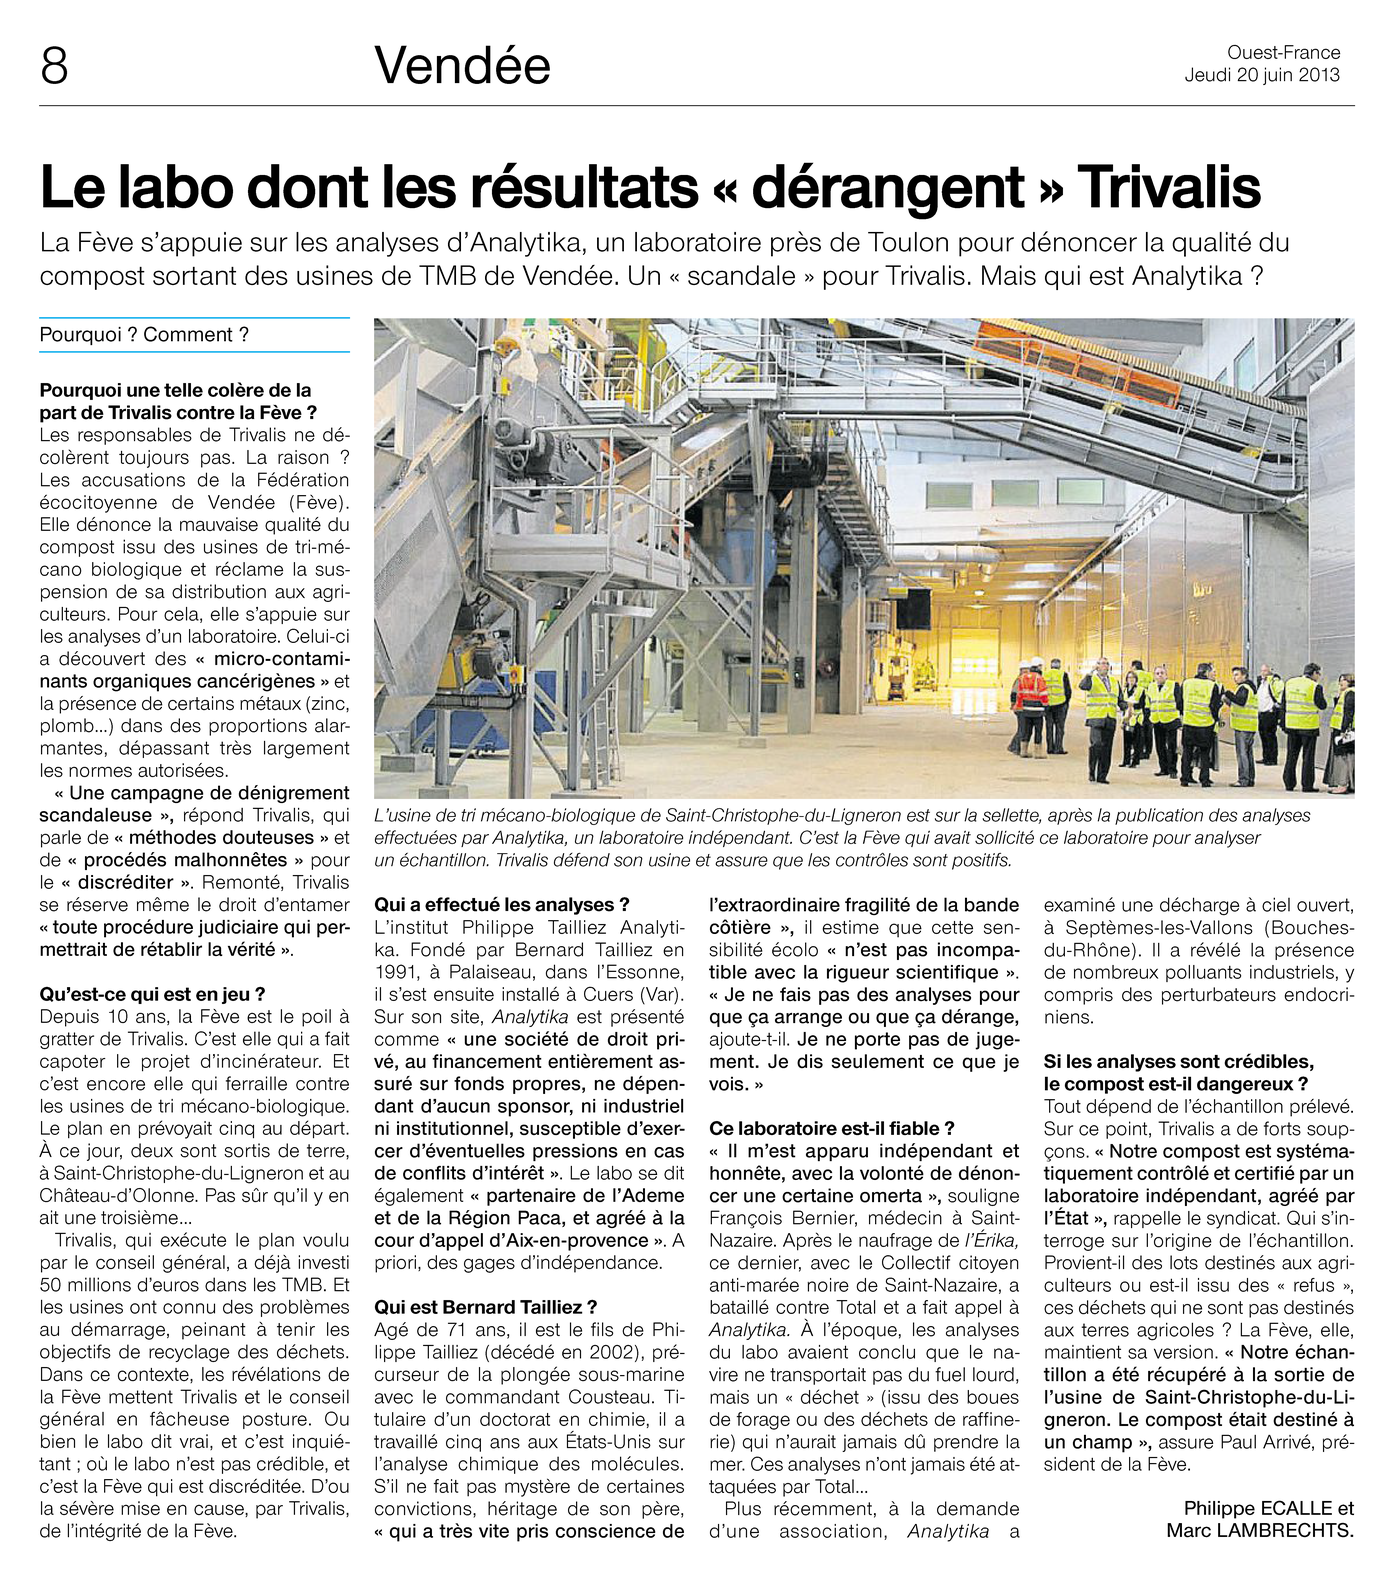 20.06.2013 > OUEST-FRANCE Pays de la Loire : "Le labo dont les résultats « dérangent » Trivalis"